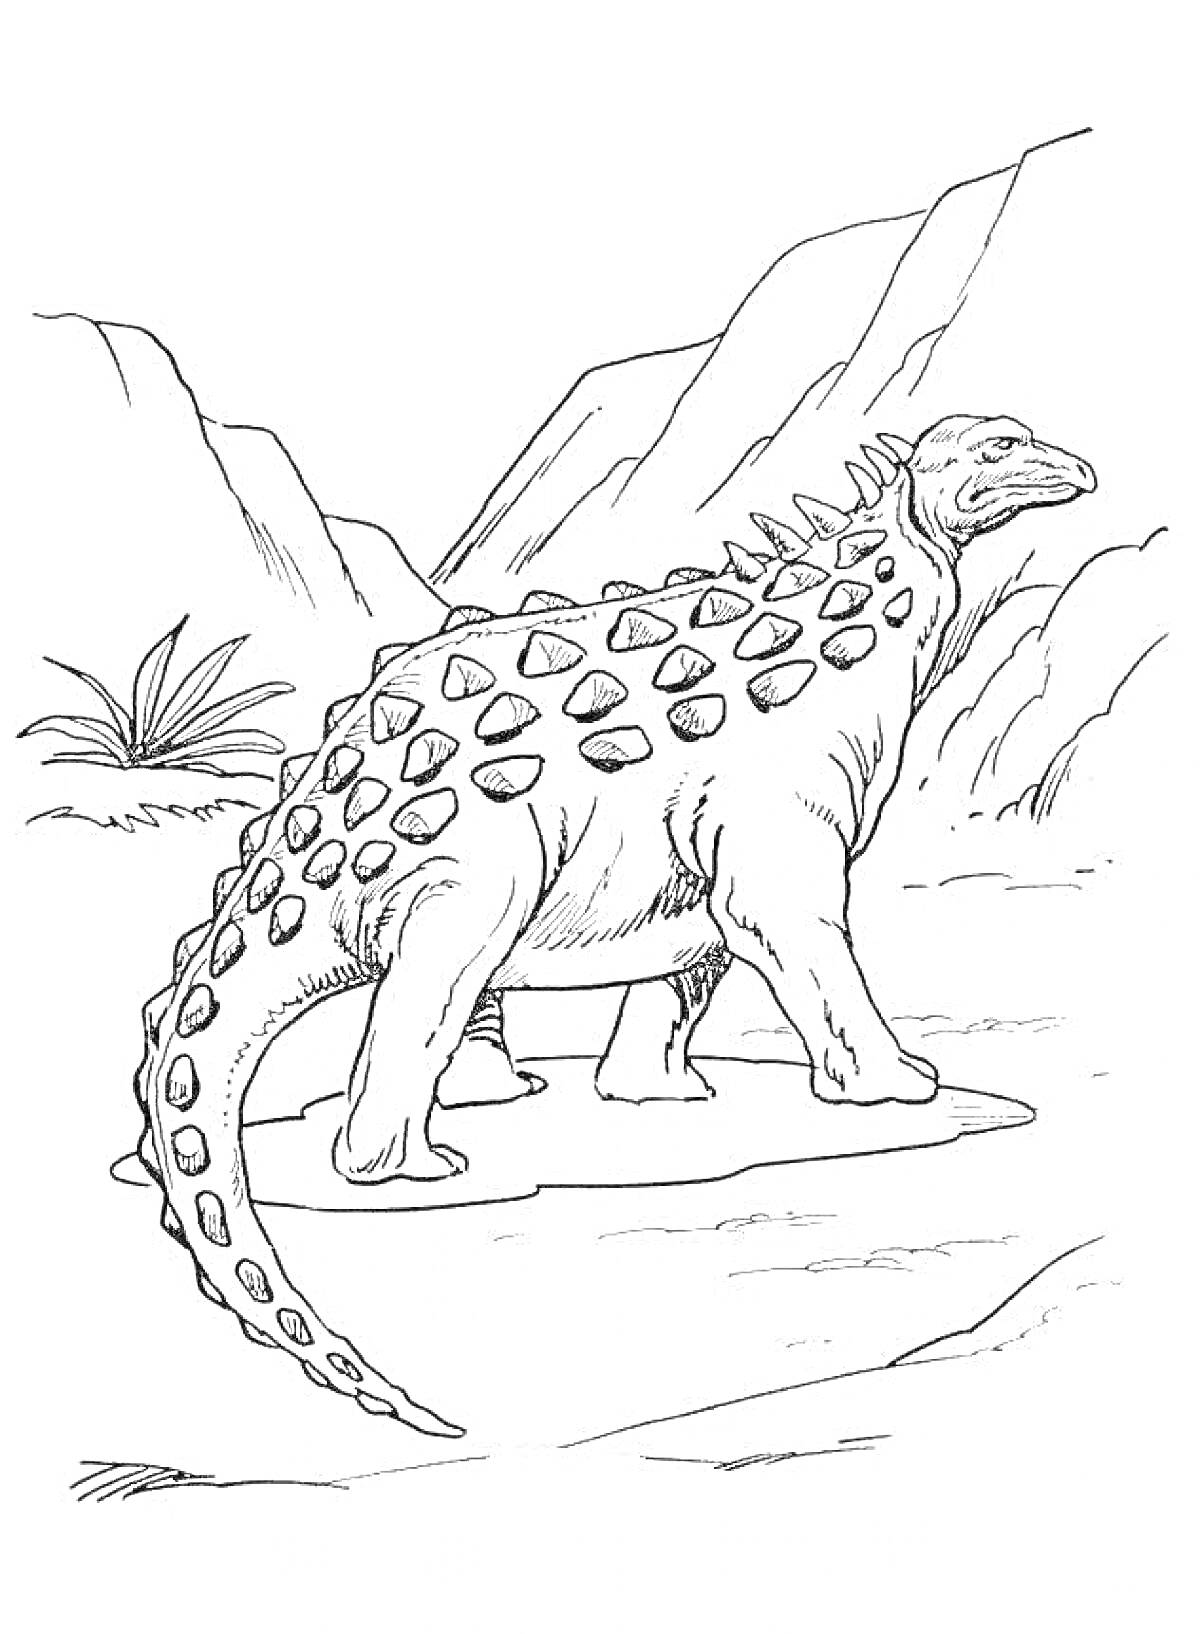 Раскраска Анкилозавр на фоне горного ландшафта с растительностью